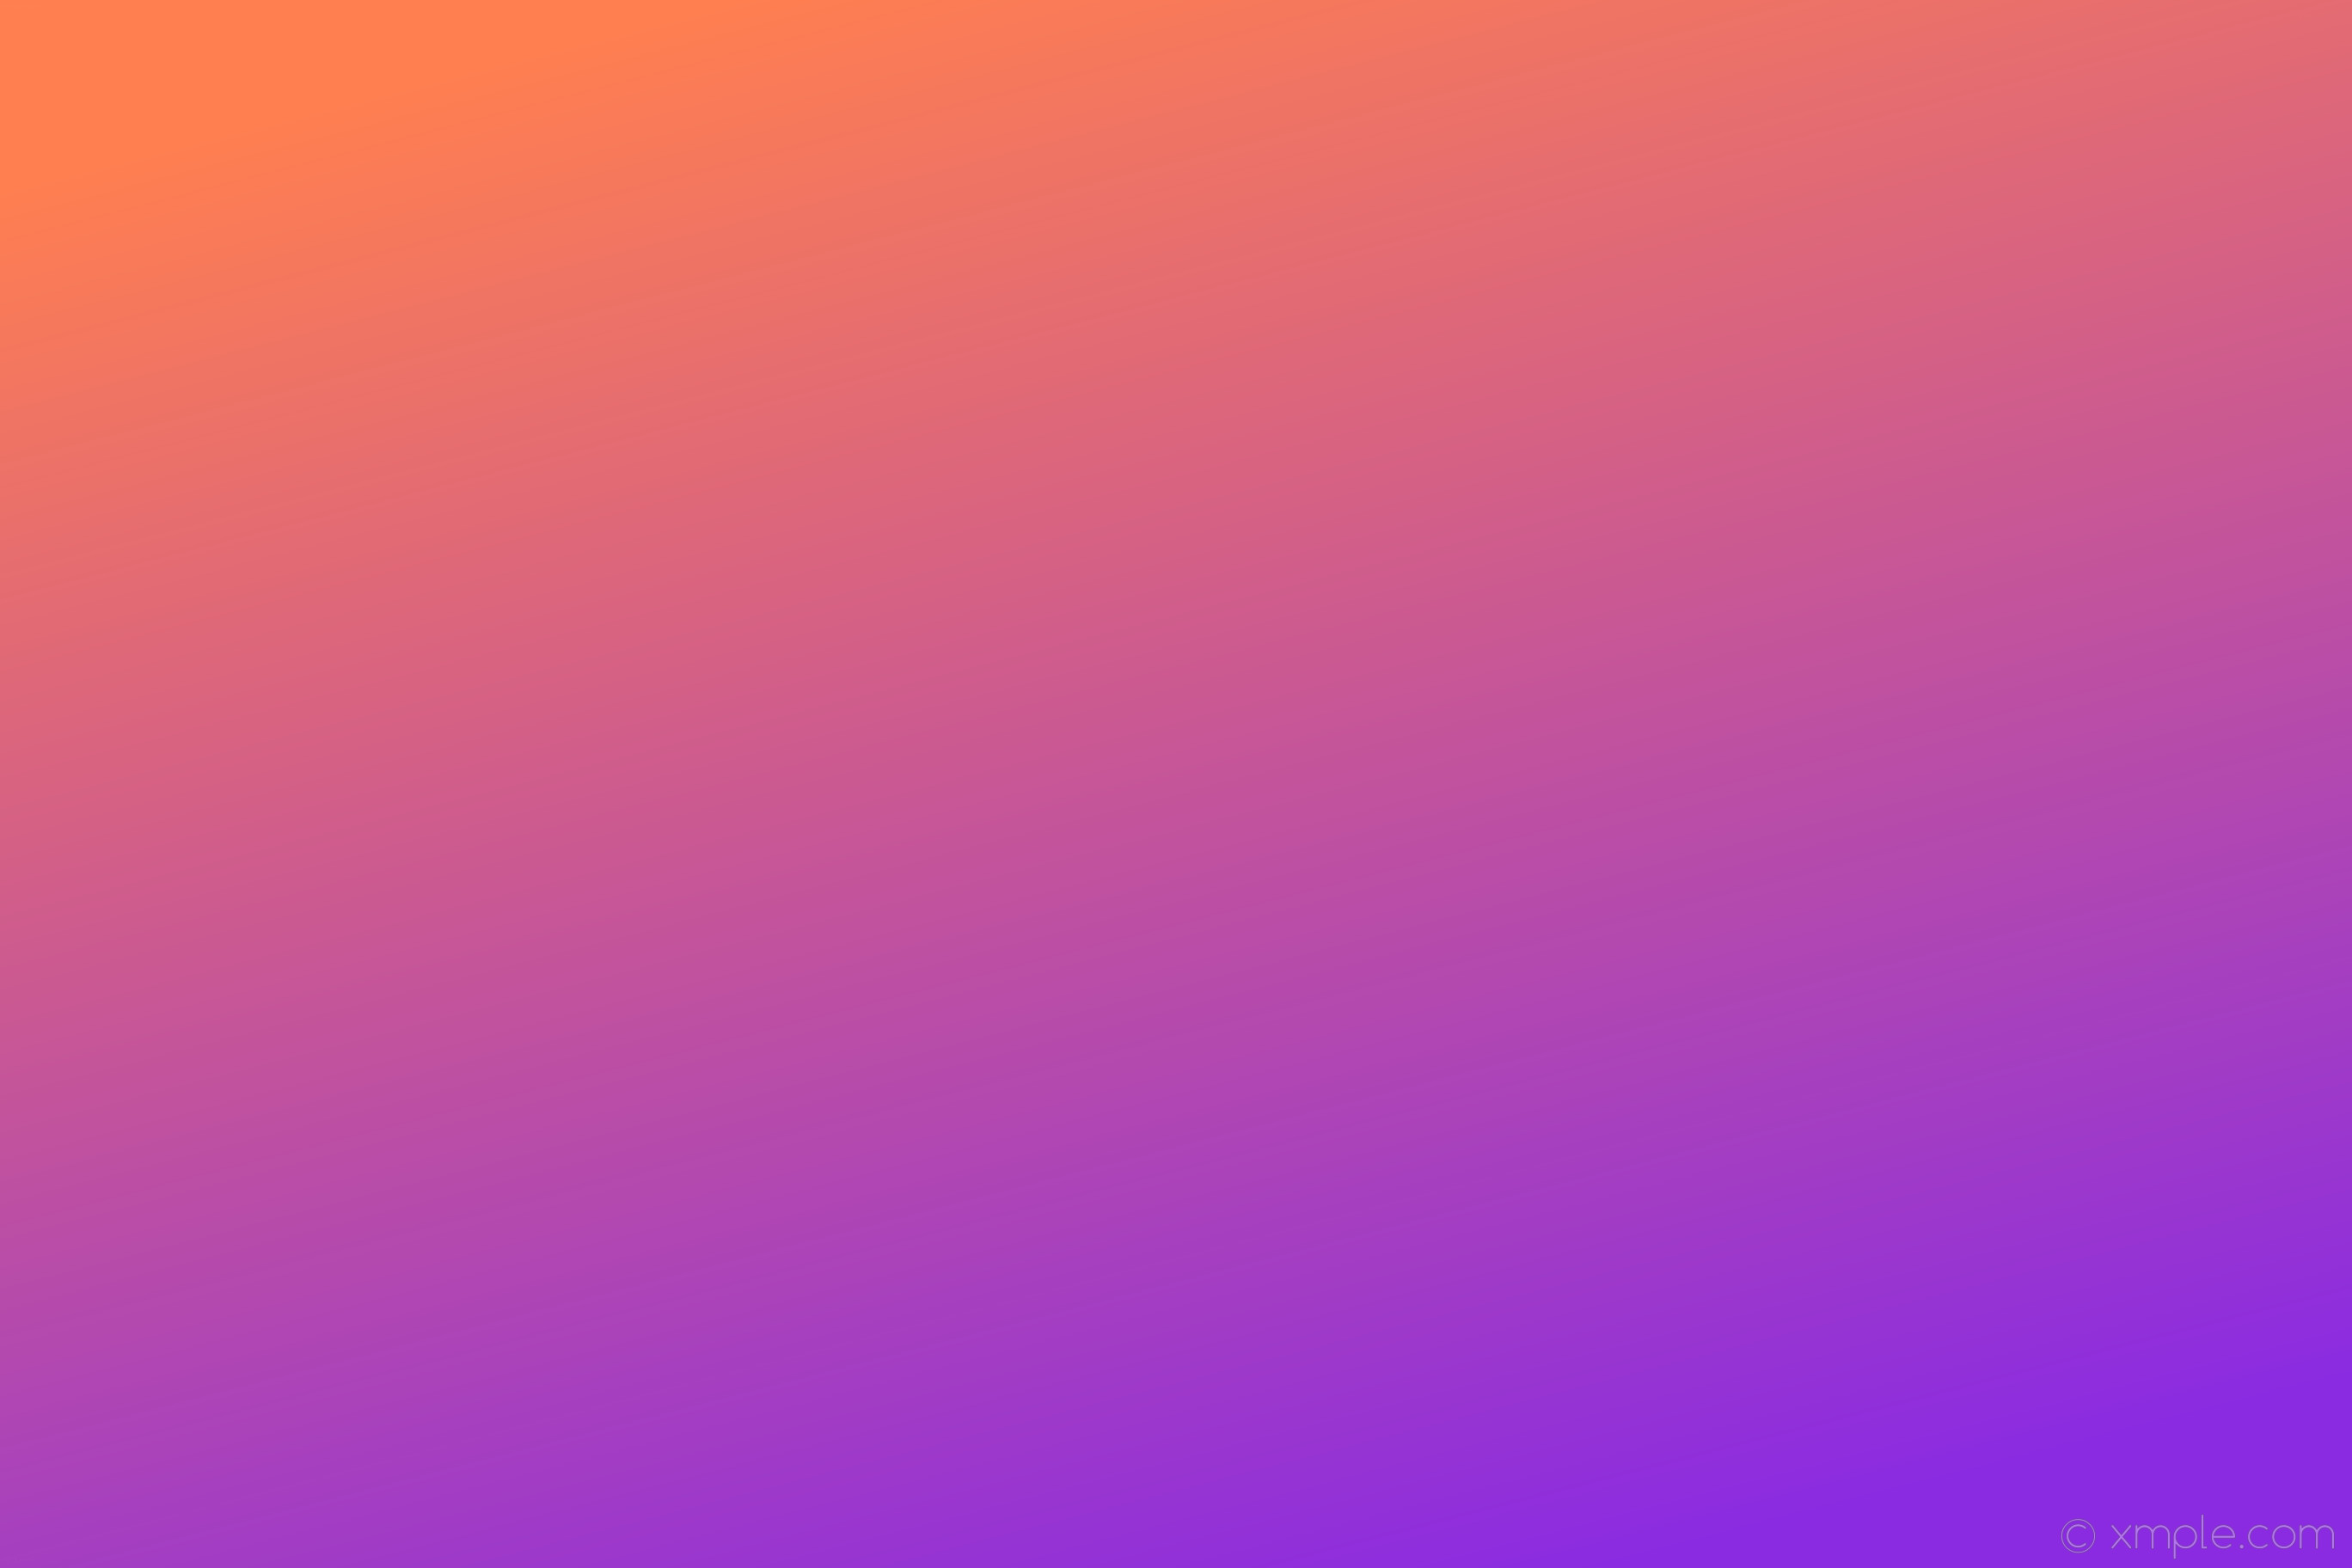 orange tapete b & q,rosa,lila,violett,rot,blau